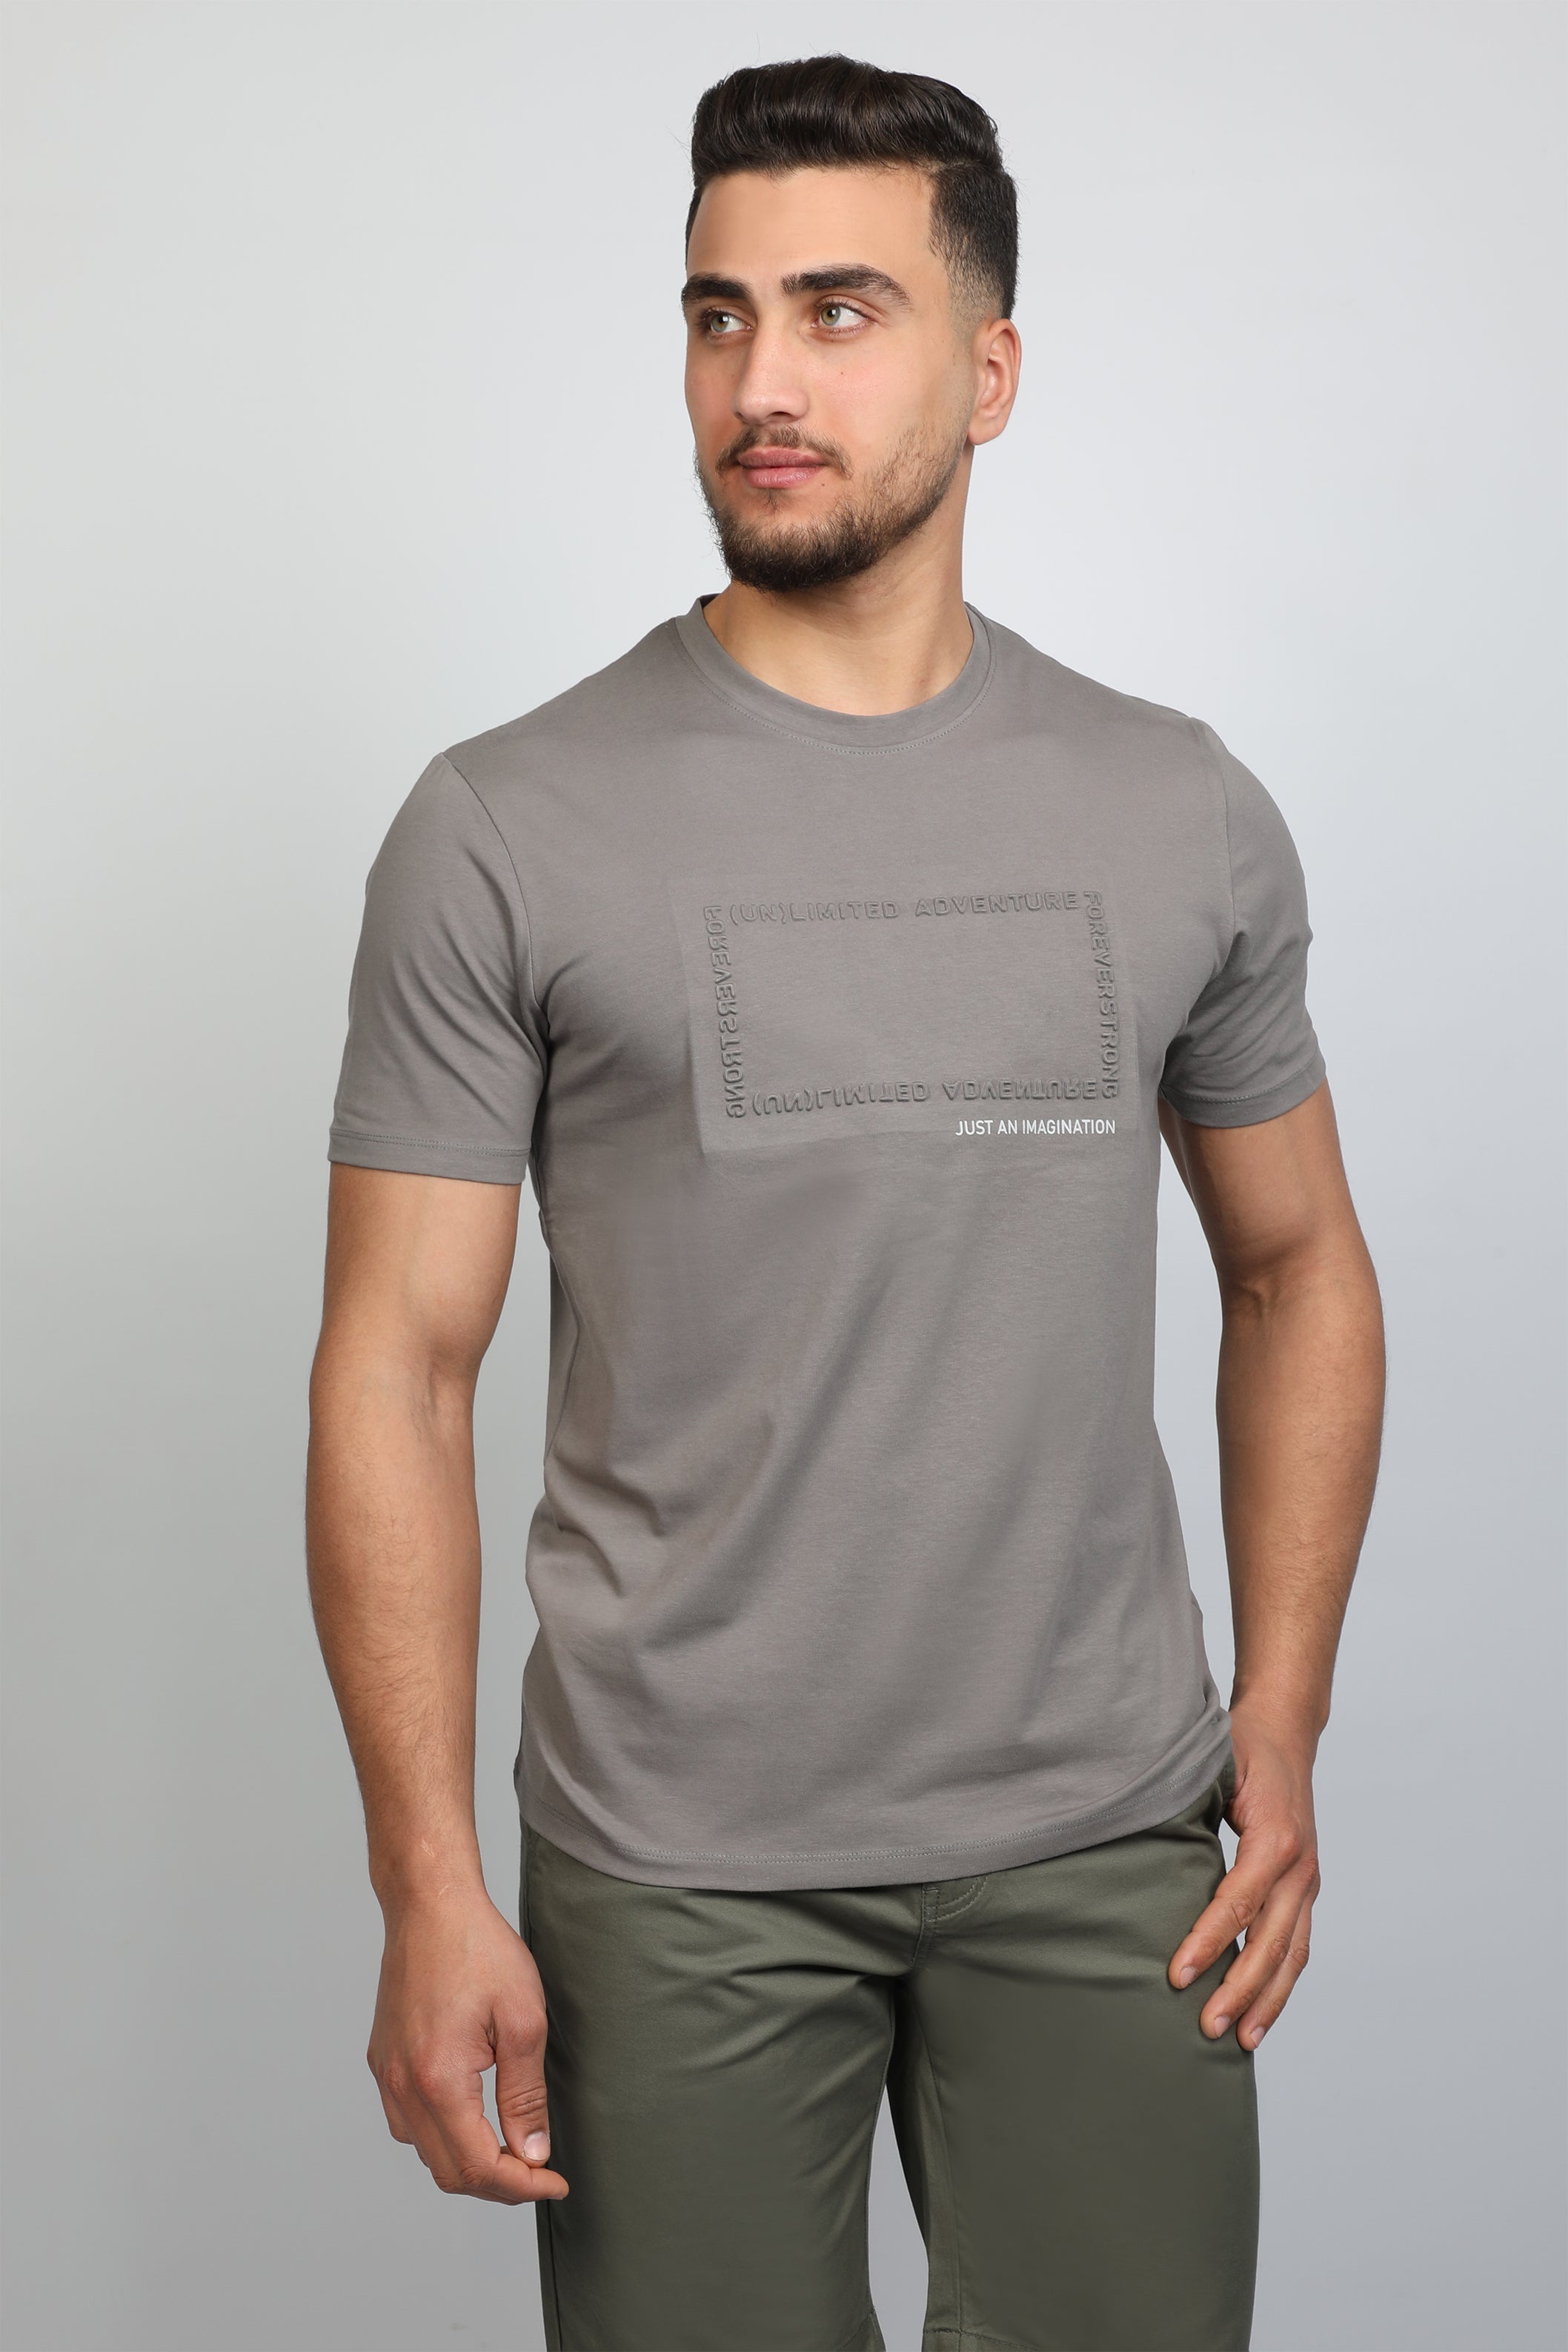 T-shirt Light Grey ' Just An Imagination' Front Design